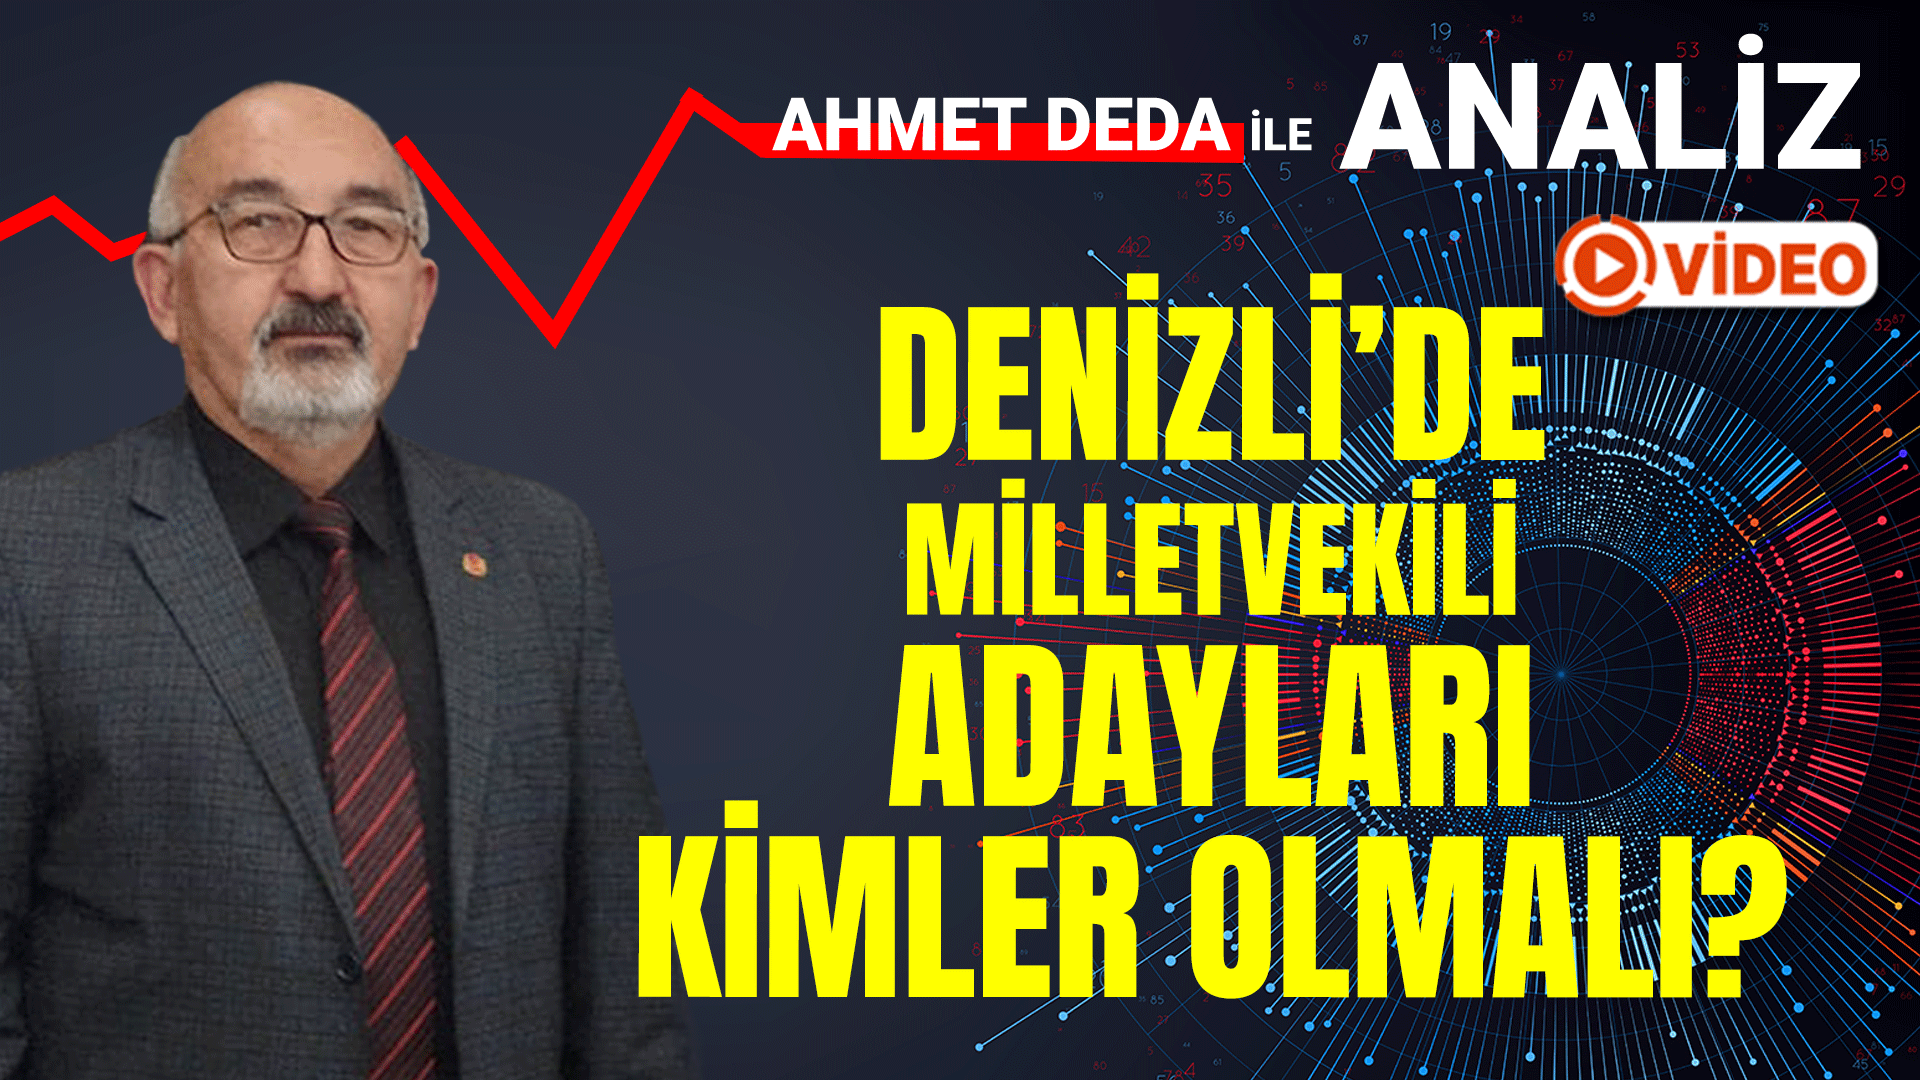 Ahmet Deda ile Analiz,